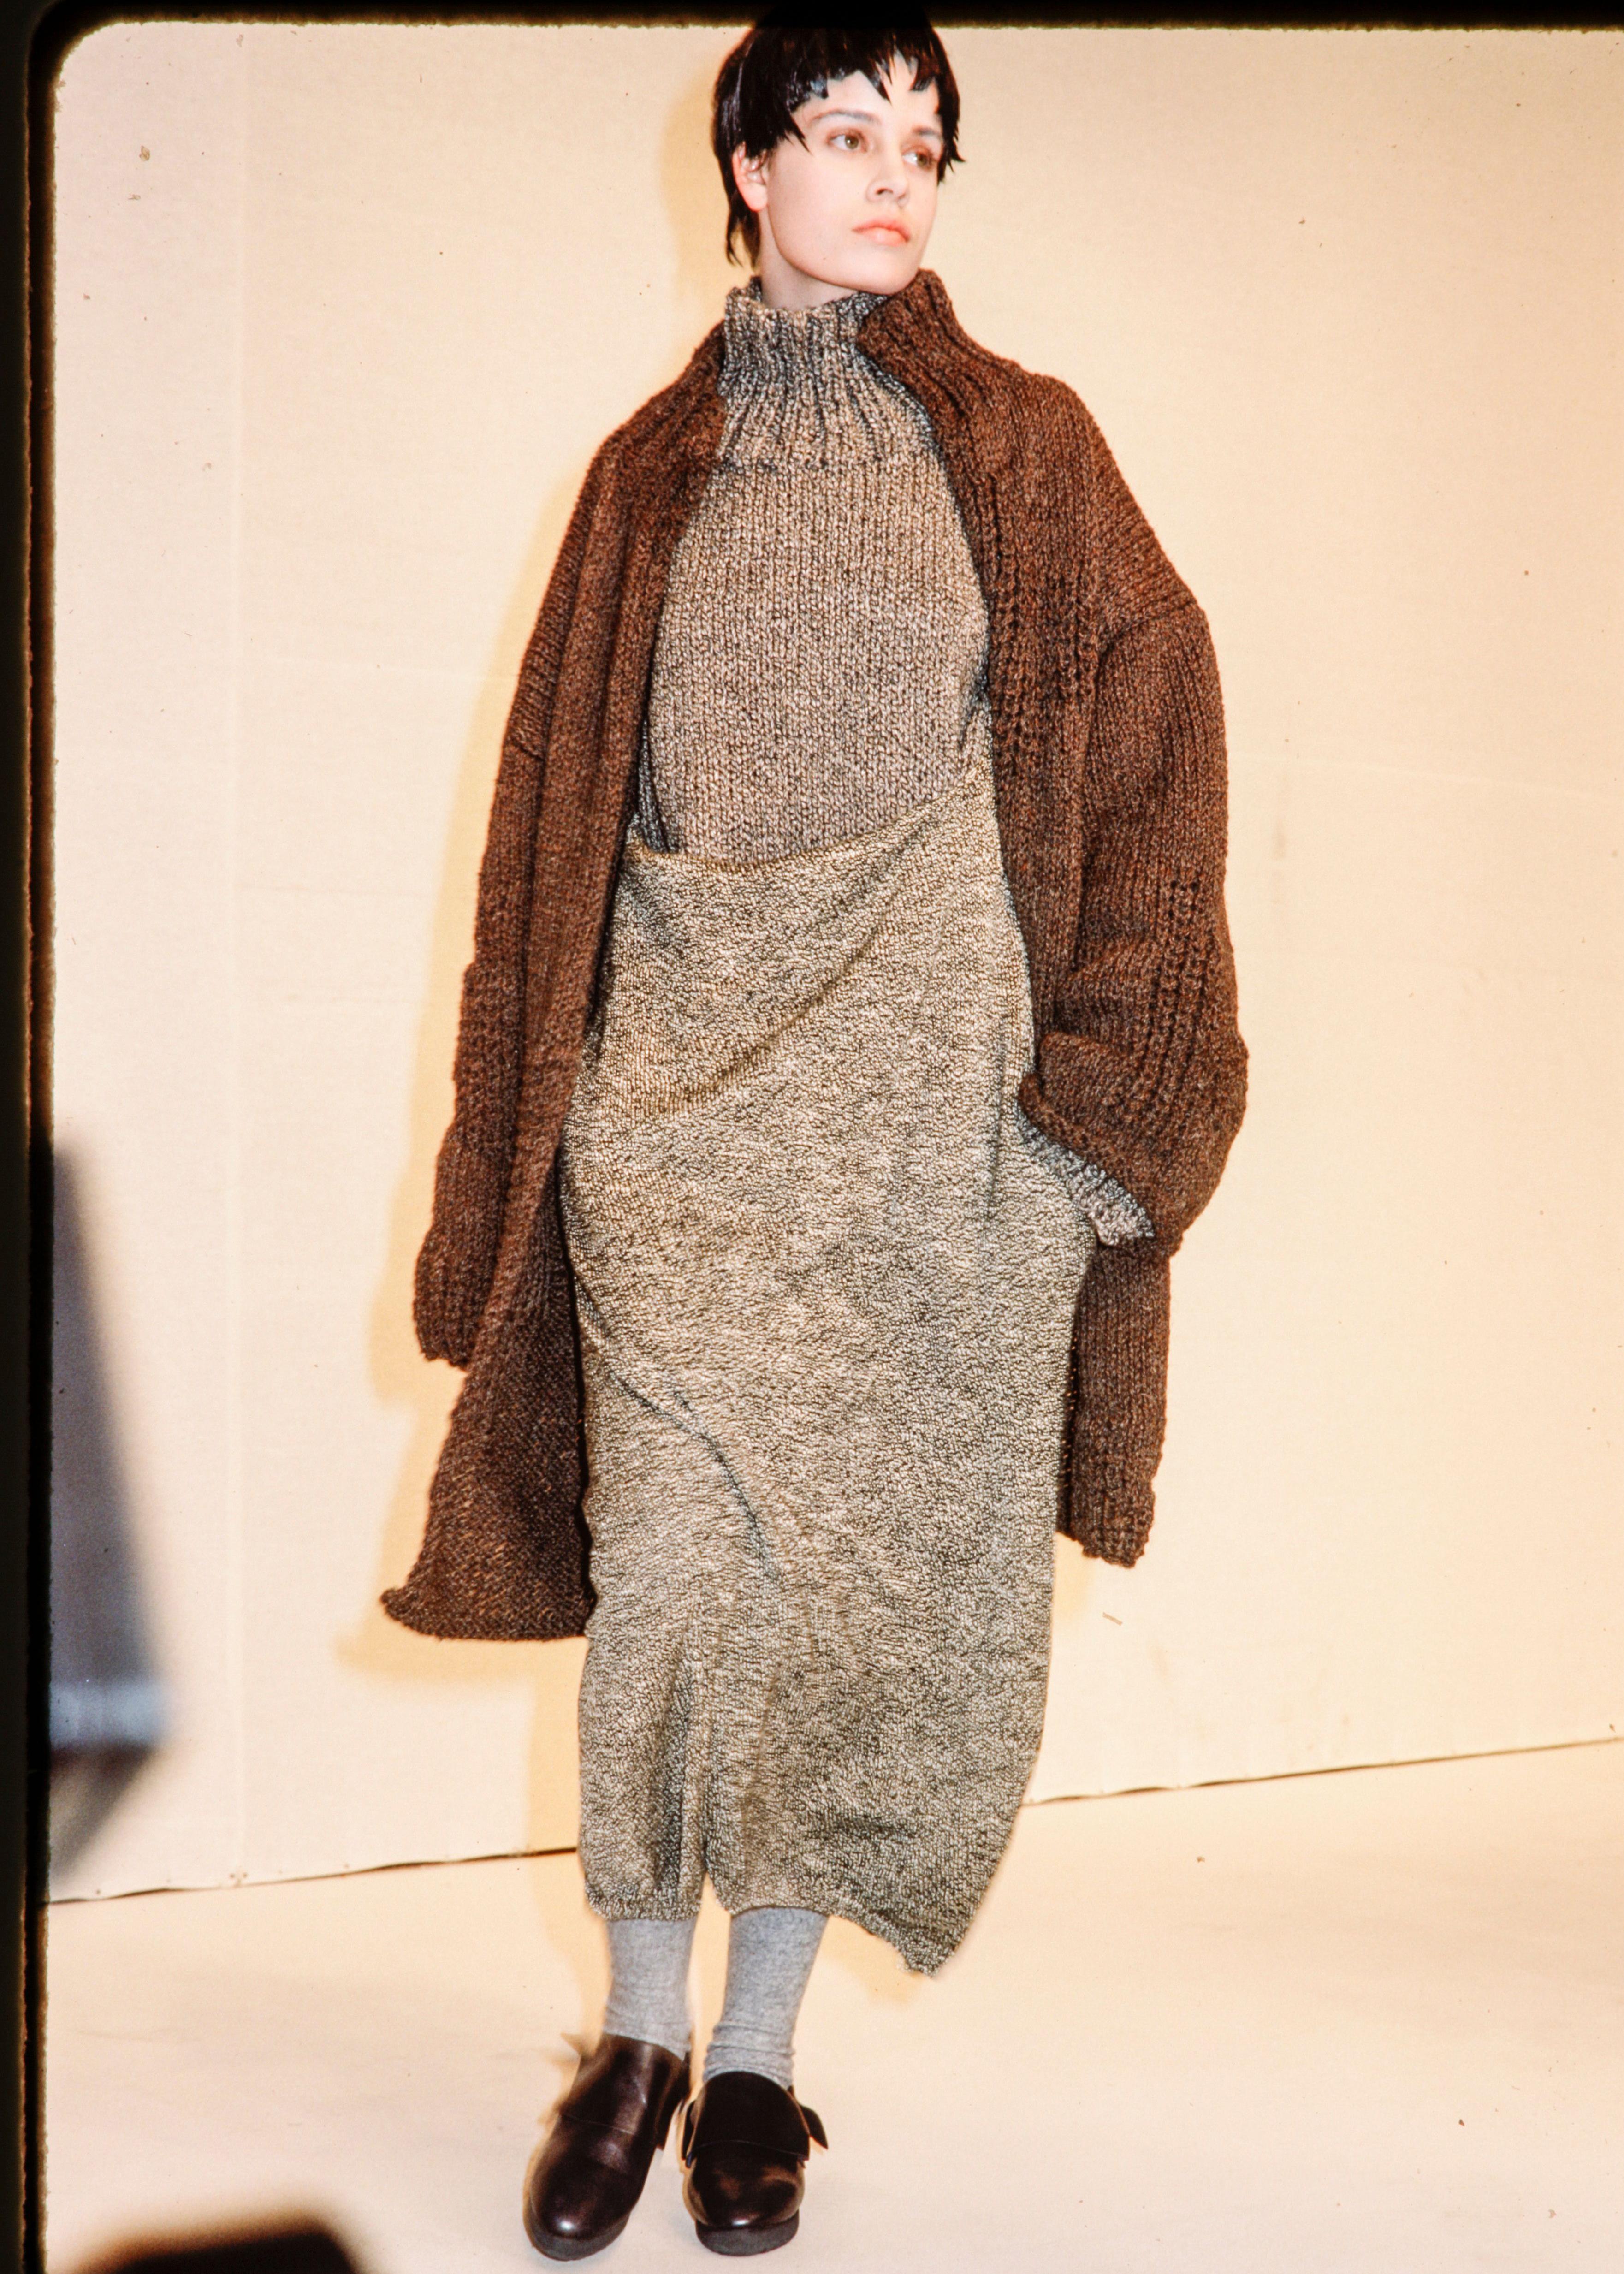 Yohji Yamamoto Brauner Strickpullover aus Wolle in Übergröße und Rollkragenpullover.

Herbst-Winter 1984